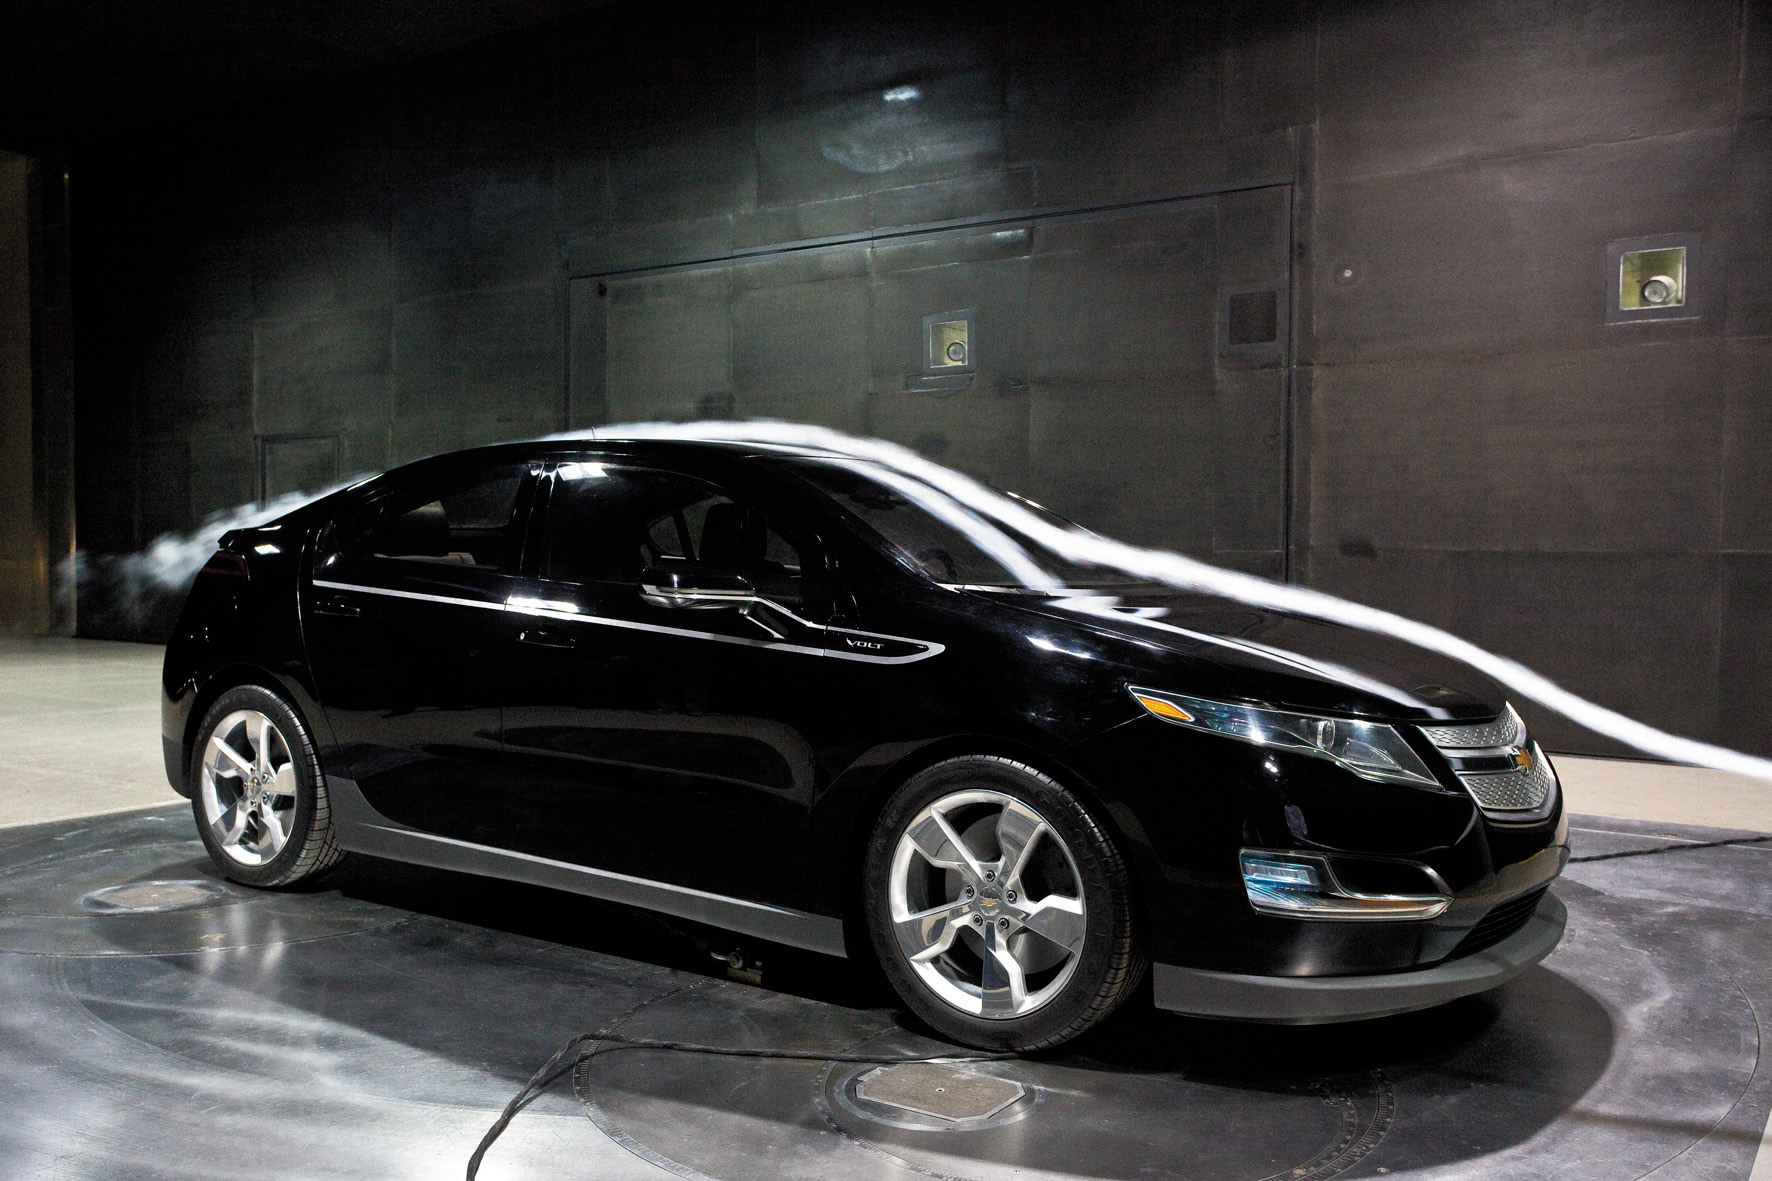 Túnel de vento da GM onde foi testado o Volt, automóvel elétrico modelo 2010 da Chevrolet, testado pela revista Quatro Rodas.